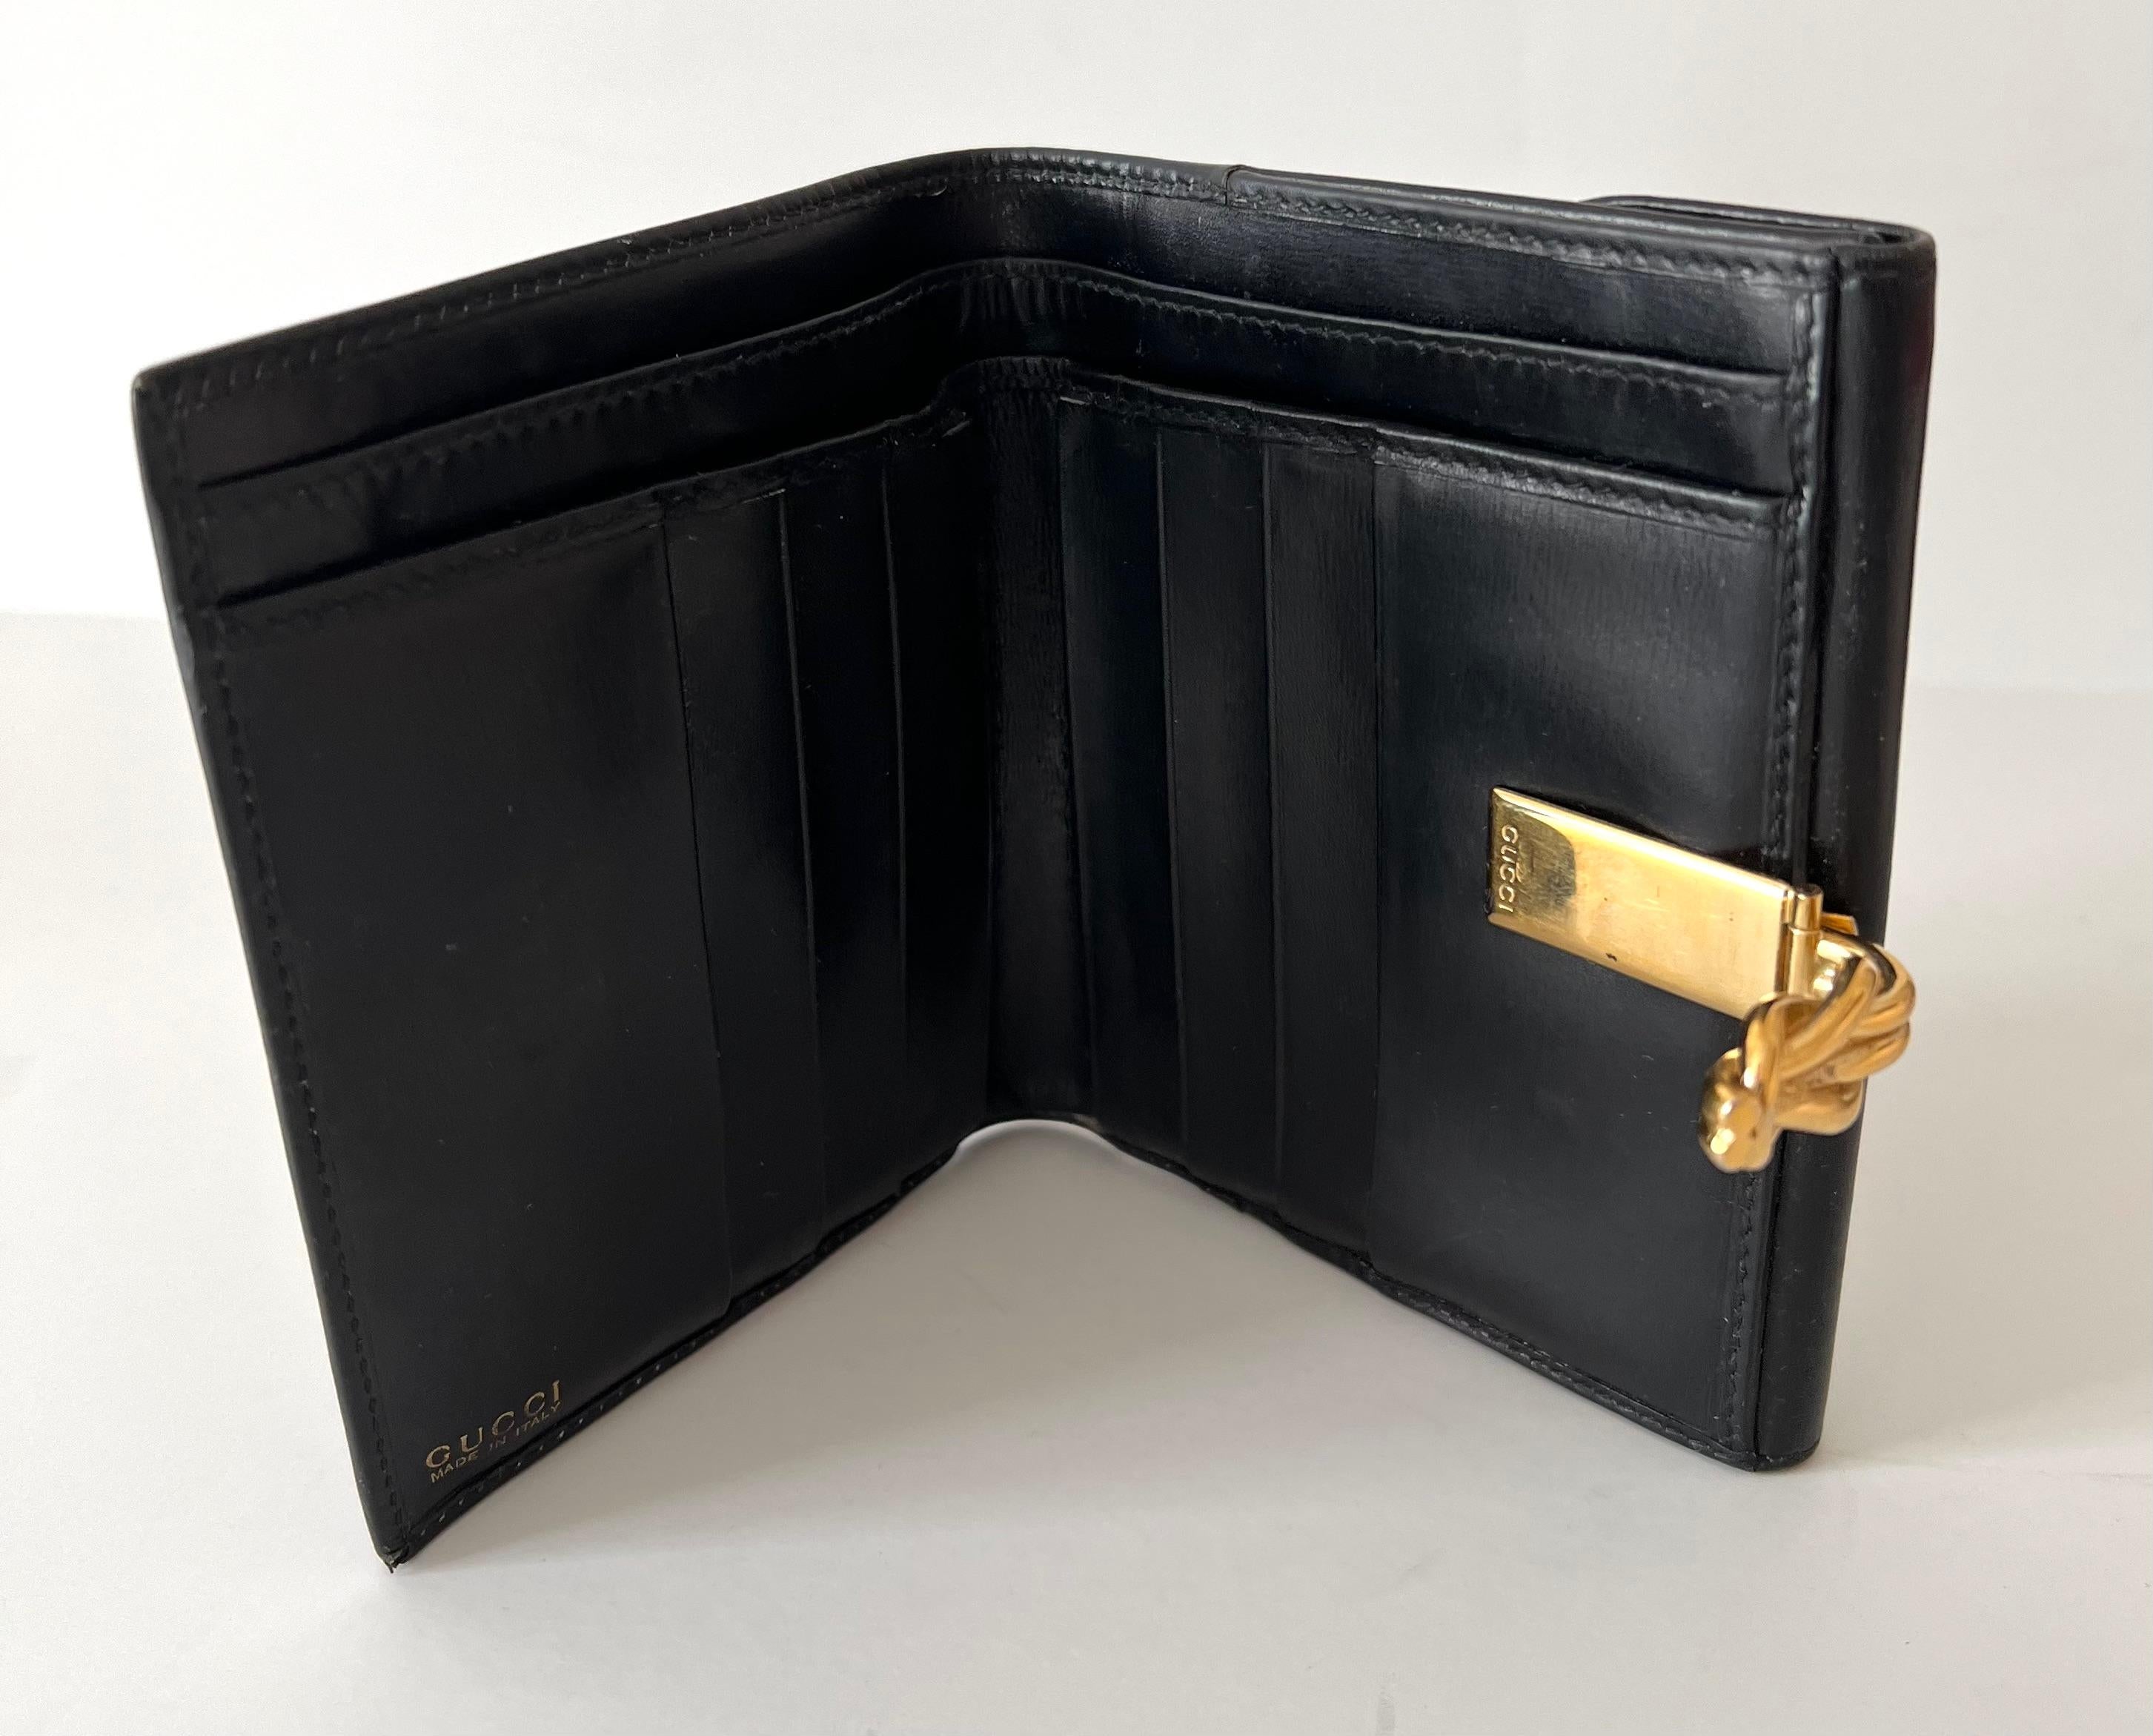 Italienische Gucci-Brieftasche aus Leder mit goldenem Knott-Verschluss und Münzhalter (20. Jahrhundert)